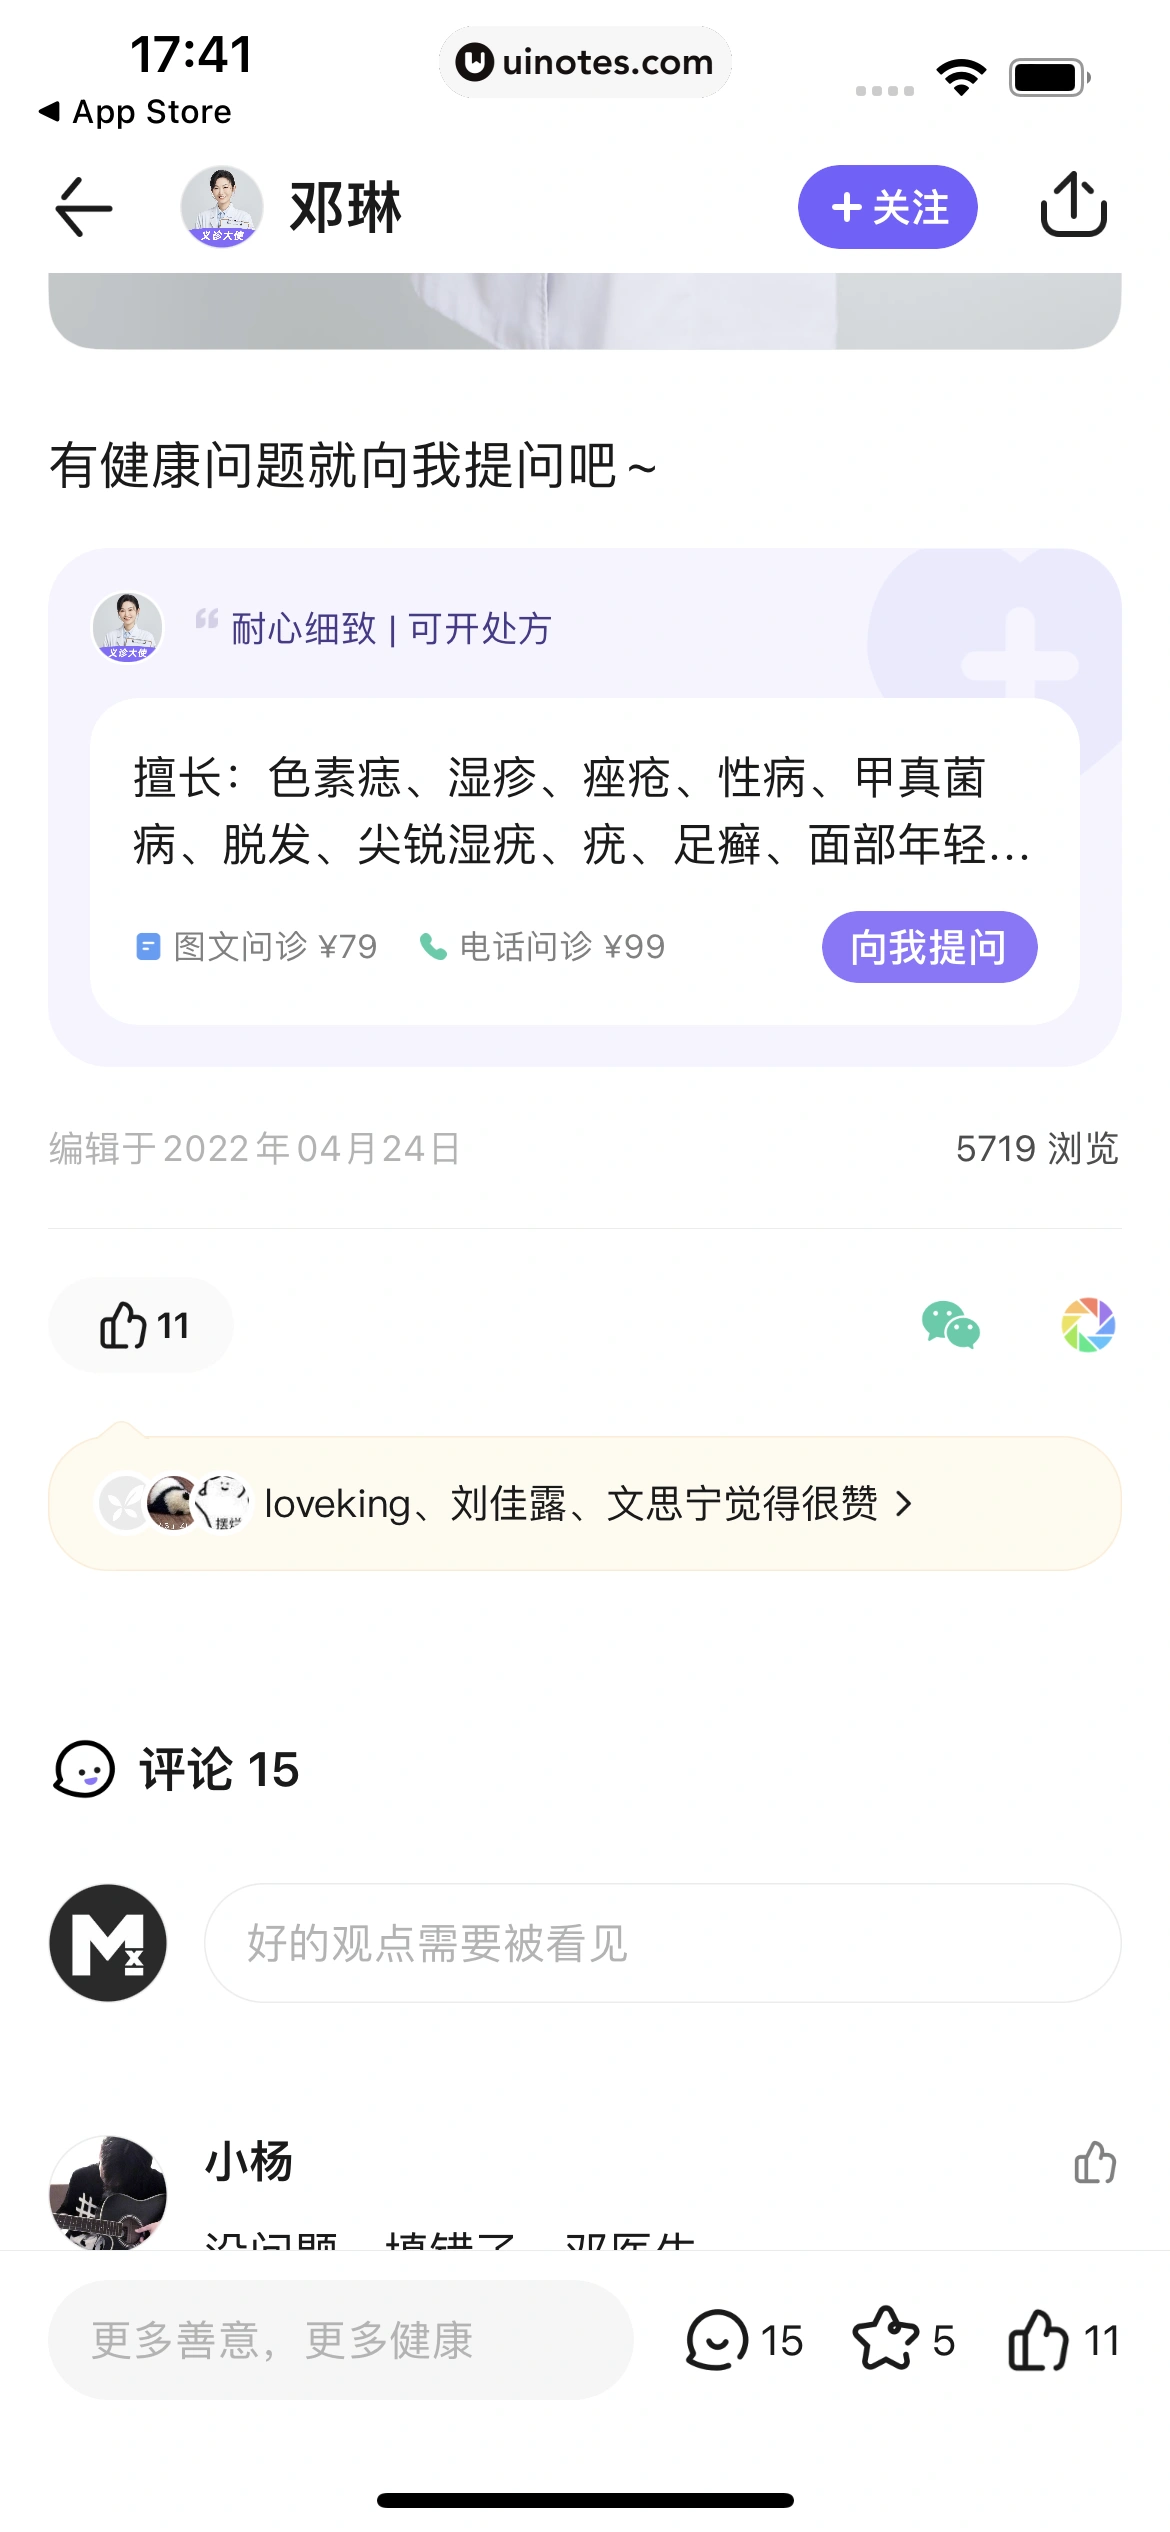 丁香医生 App 截图 117 - UI Notes